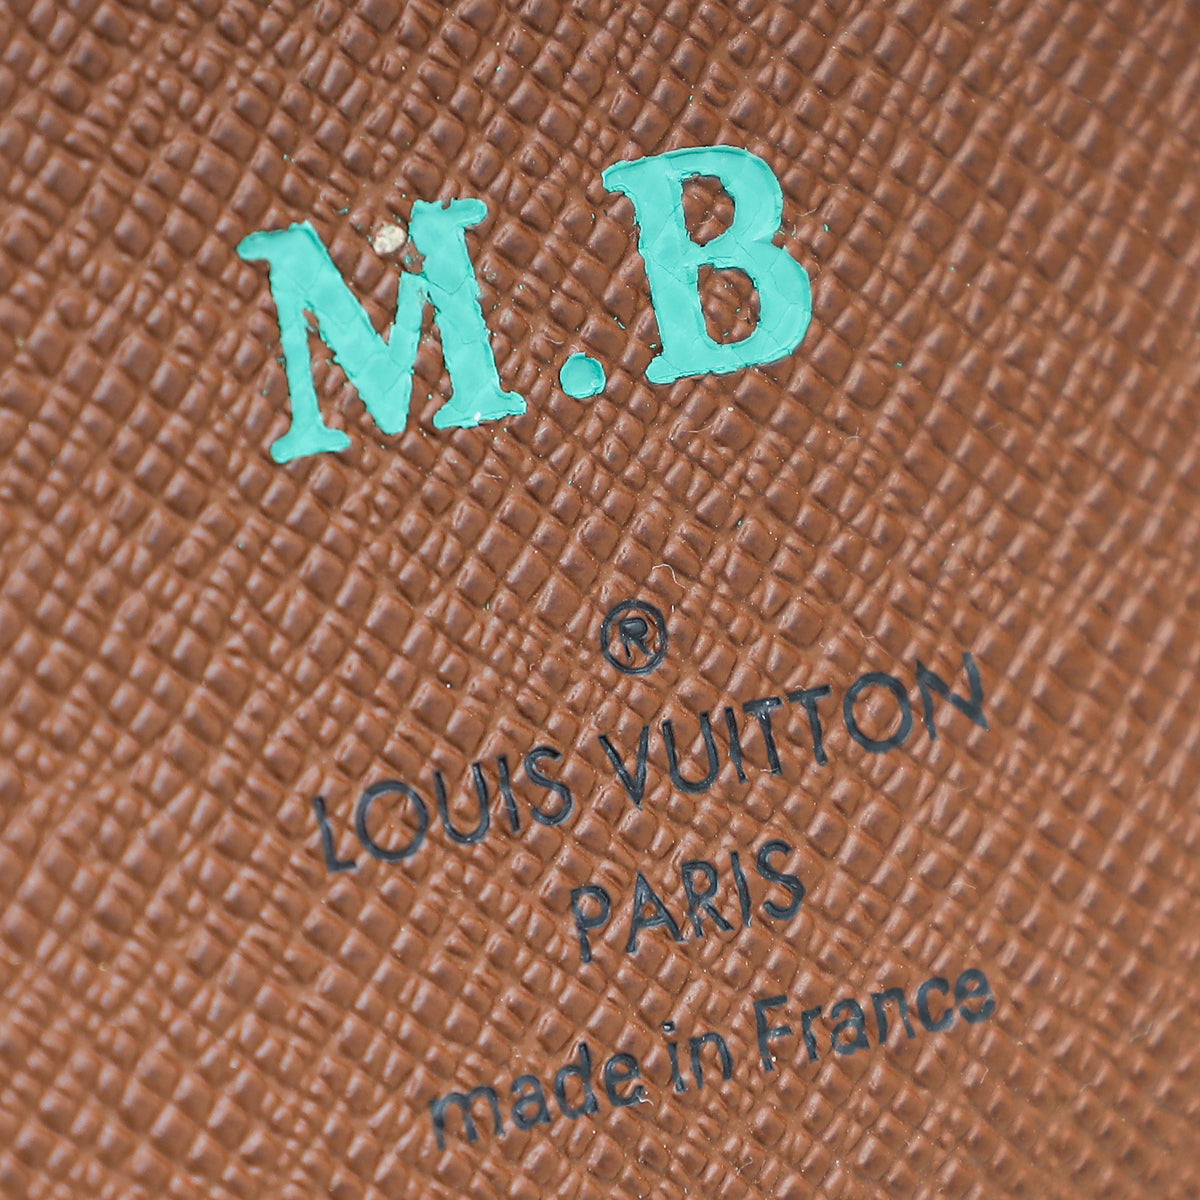 Louis Vuitton Medium Ring Agenda Cover Vuittonite Monogram